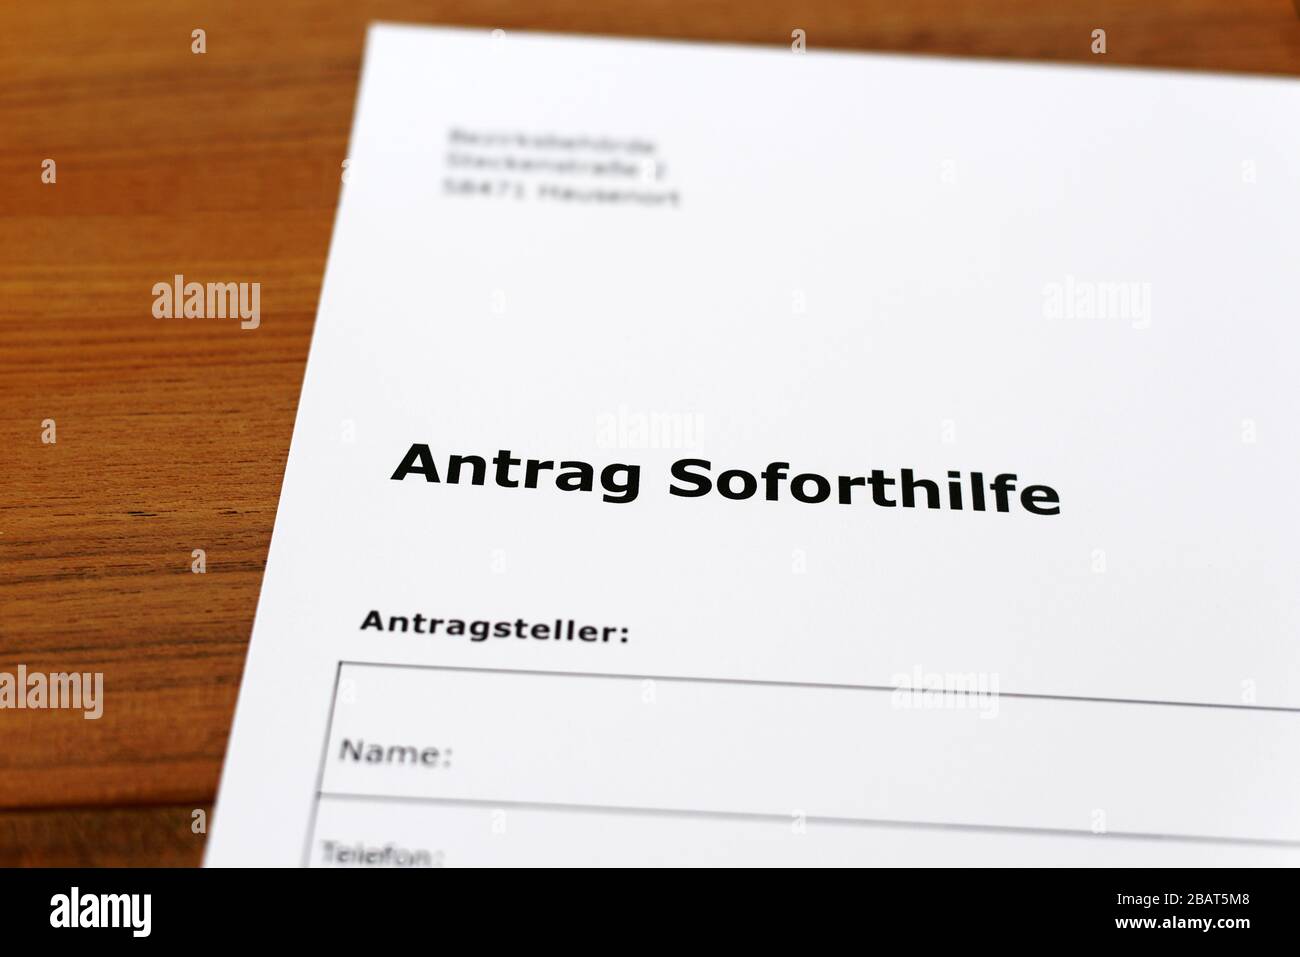 Une feuille de papier avec les mots allemands 'Antrag Soforsilfe' - Traduction en englisch: Demande d'aide immédiate. Banque D'Images